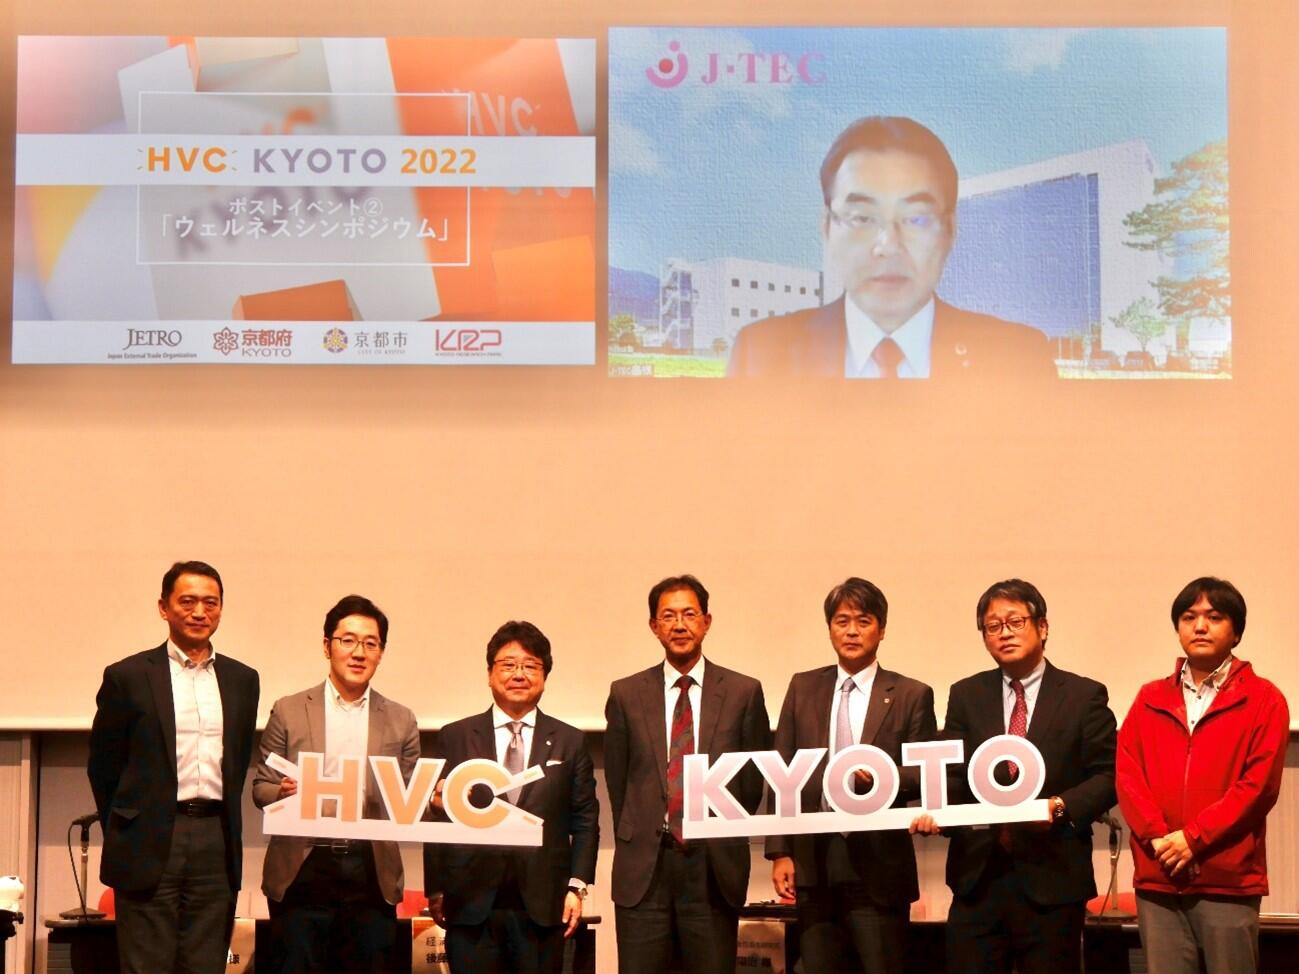 イベントレポート【HVC KYOTO 2022ポストイベント②】ウェルネスシンポジウム